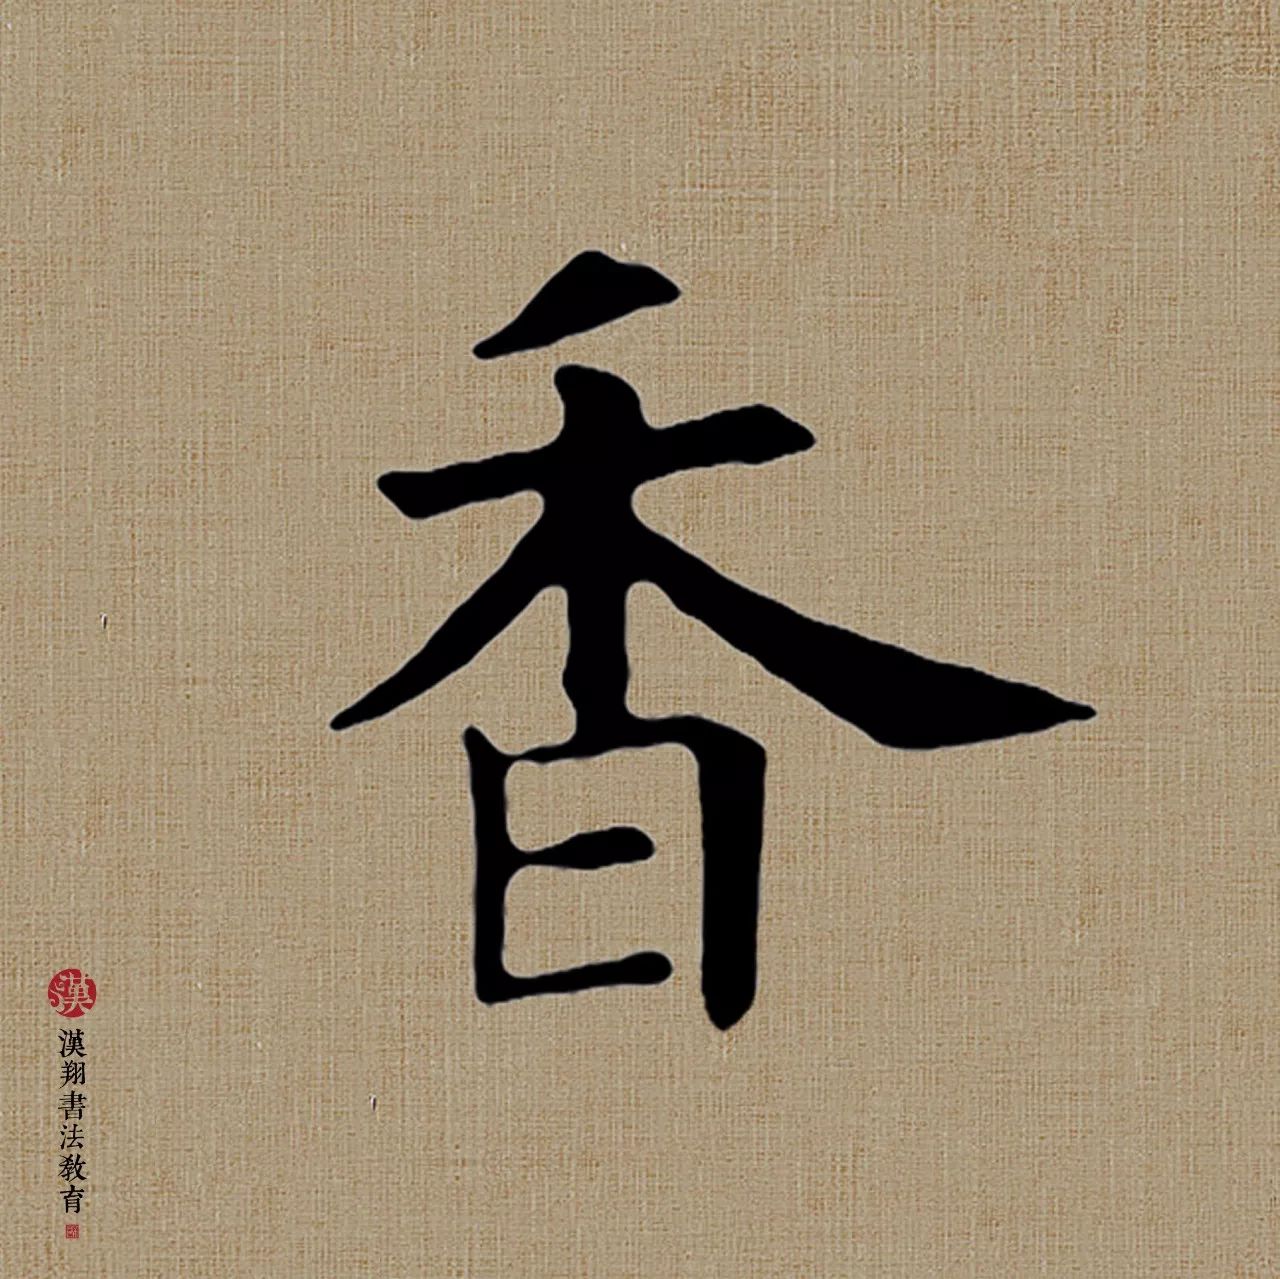 香_书法字体_字体设计作品-中国字体设计网_ziti.cndesign.com